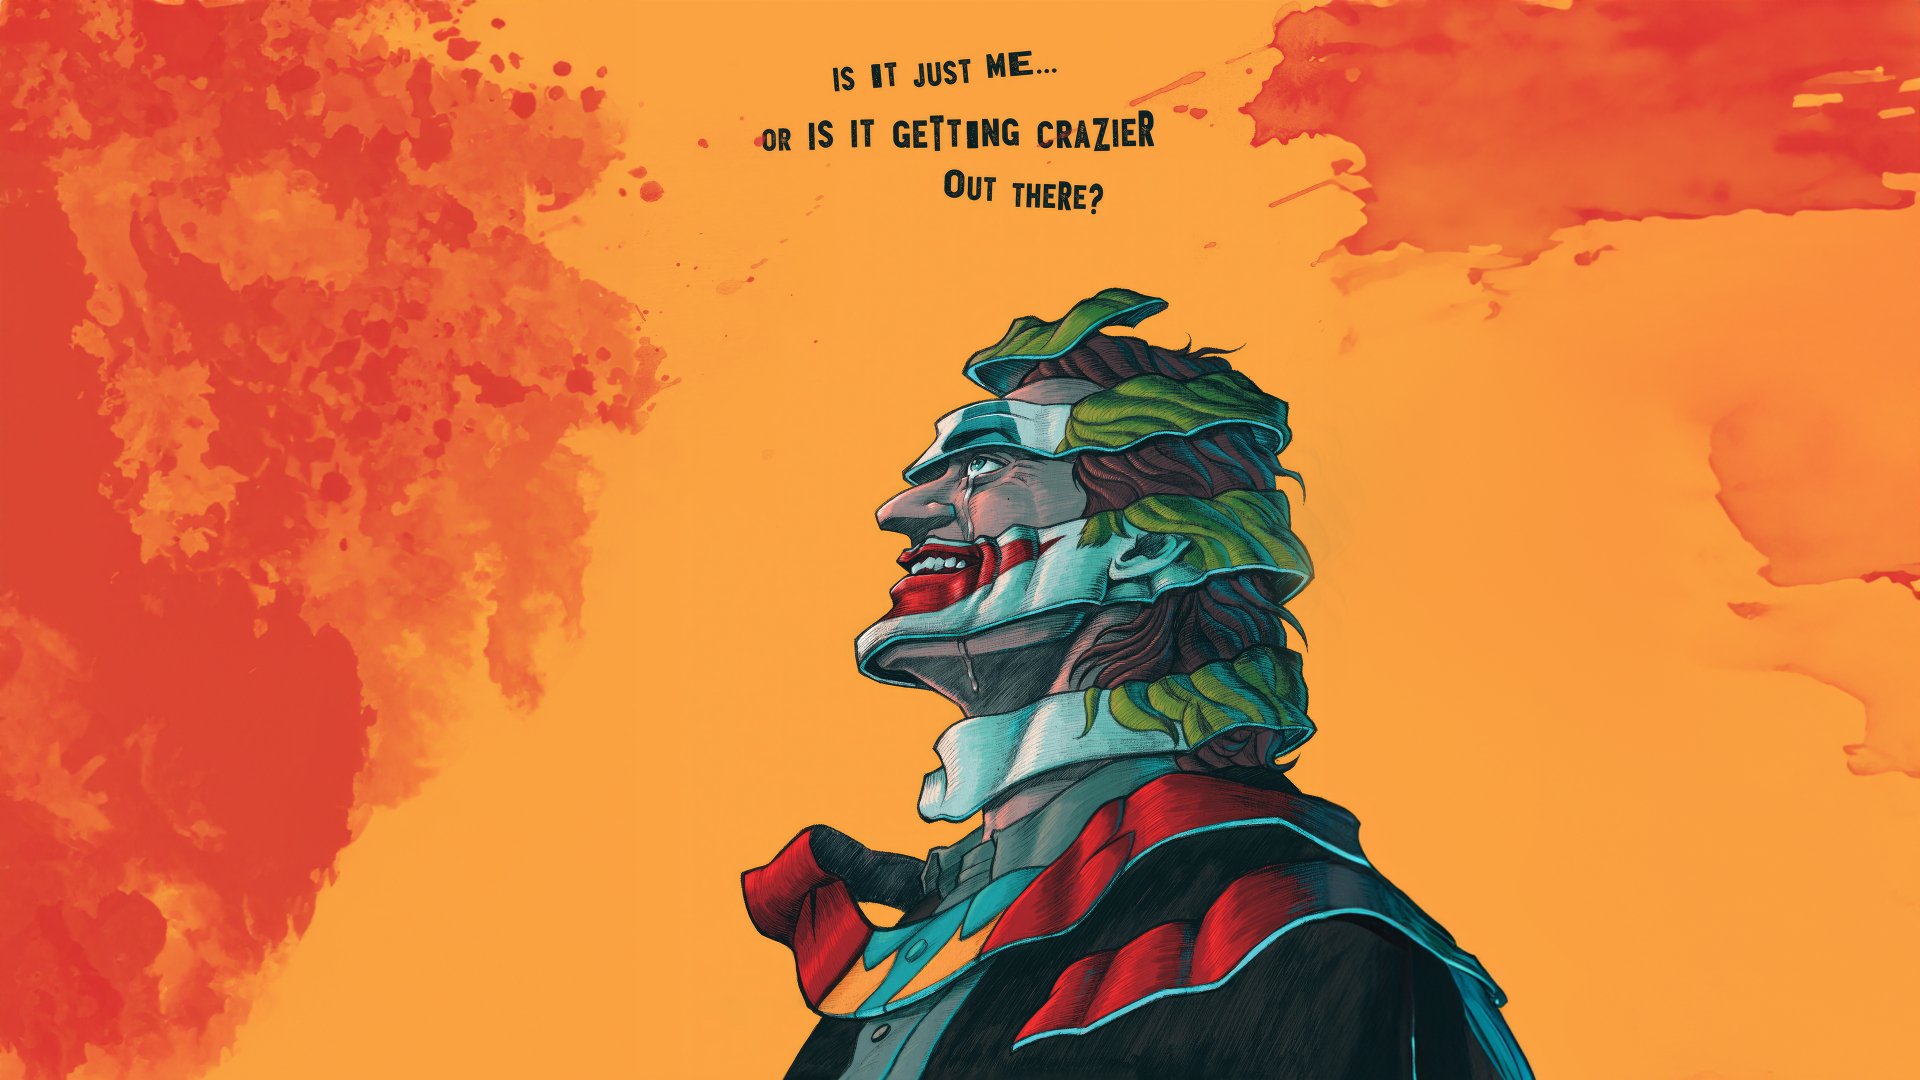 Joker 8K iPhone Wallpaper » iPhone Wallpapers